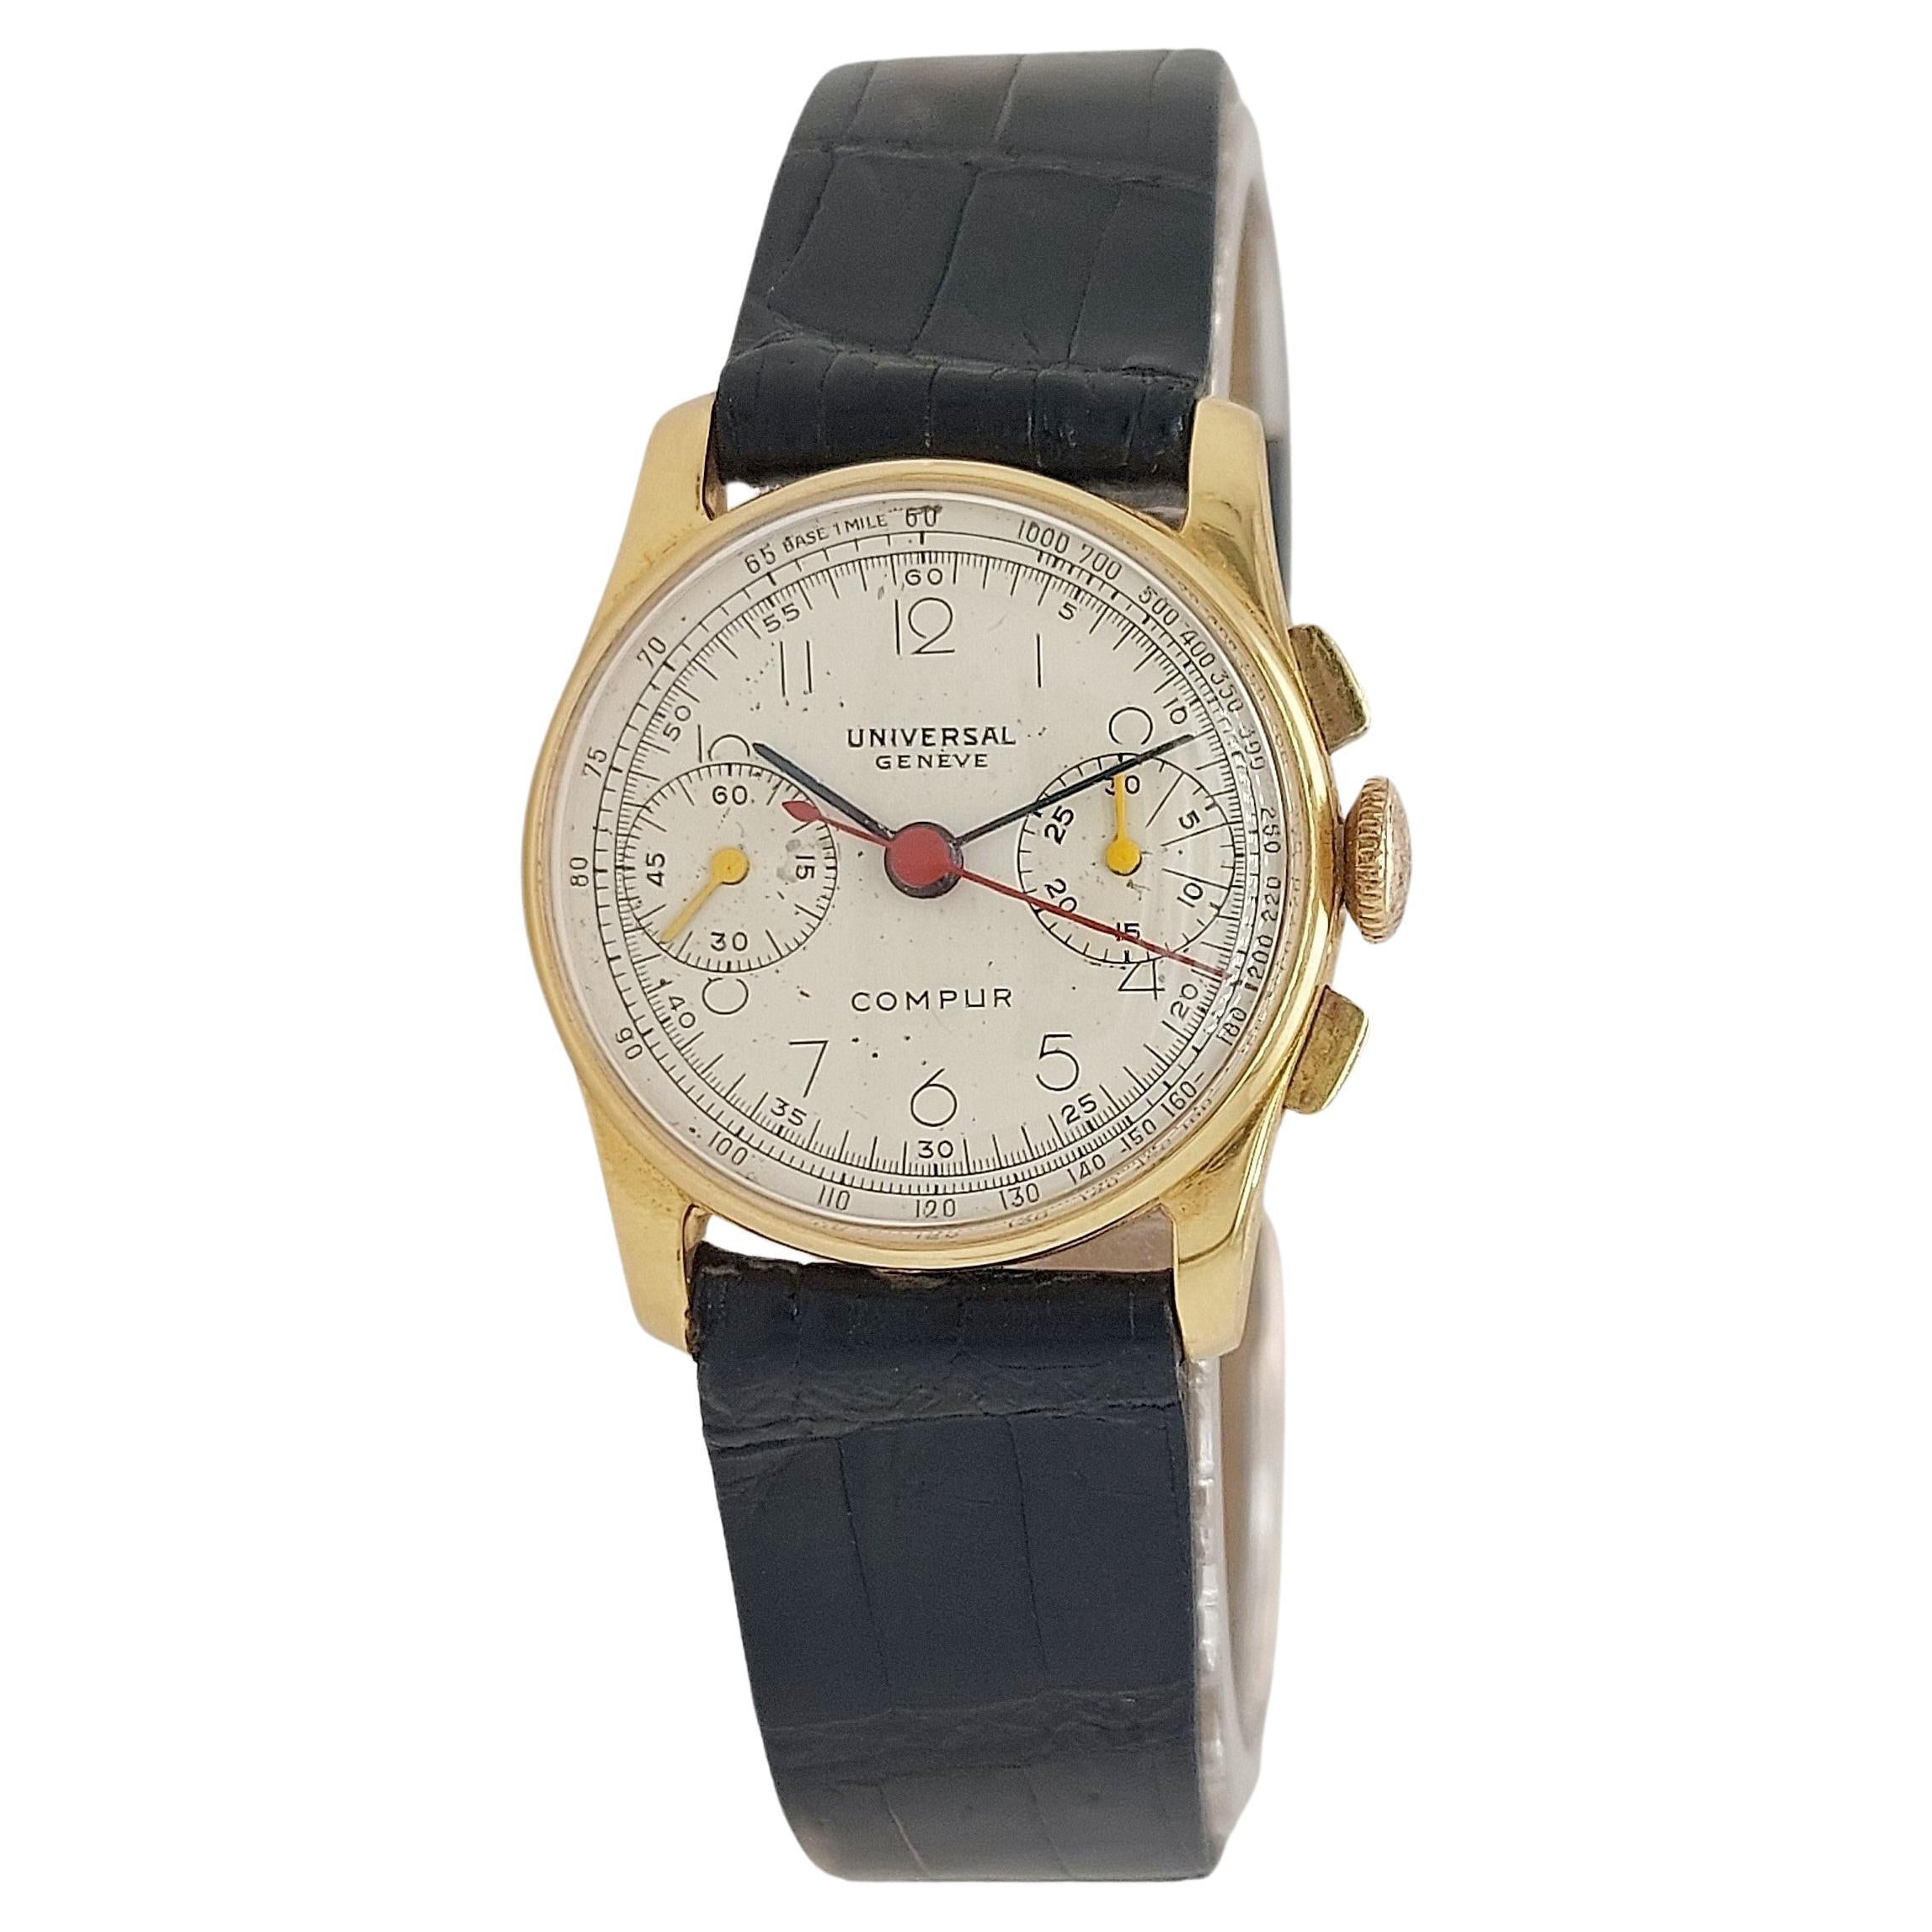 Universal Geneve Chronograph-Uhr aus 18 Karat Gelbgold, extrem selten